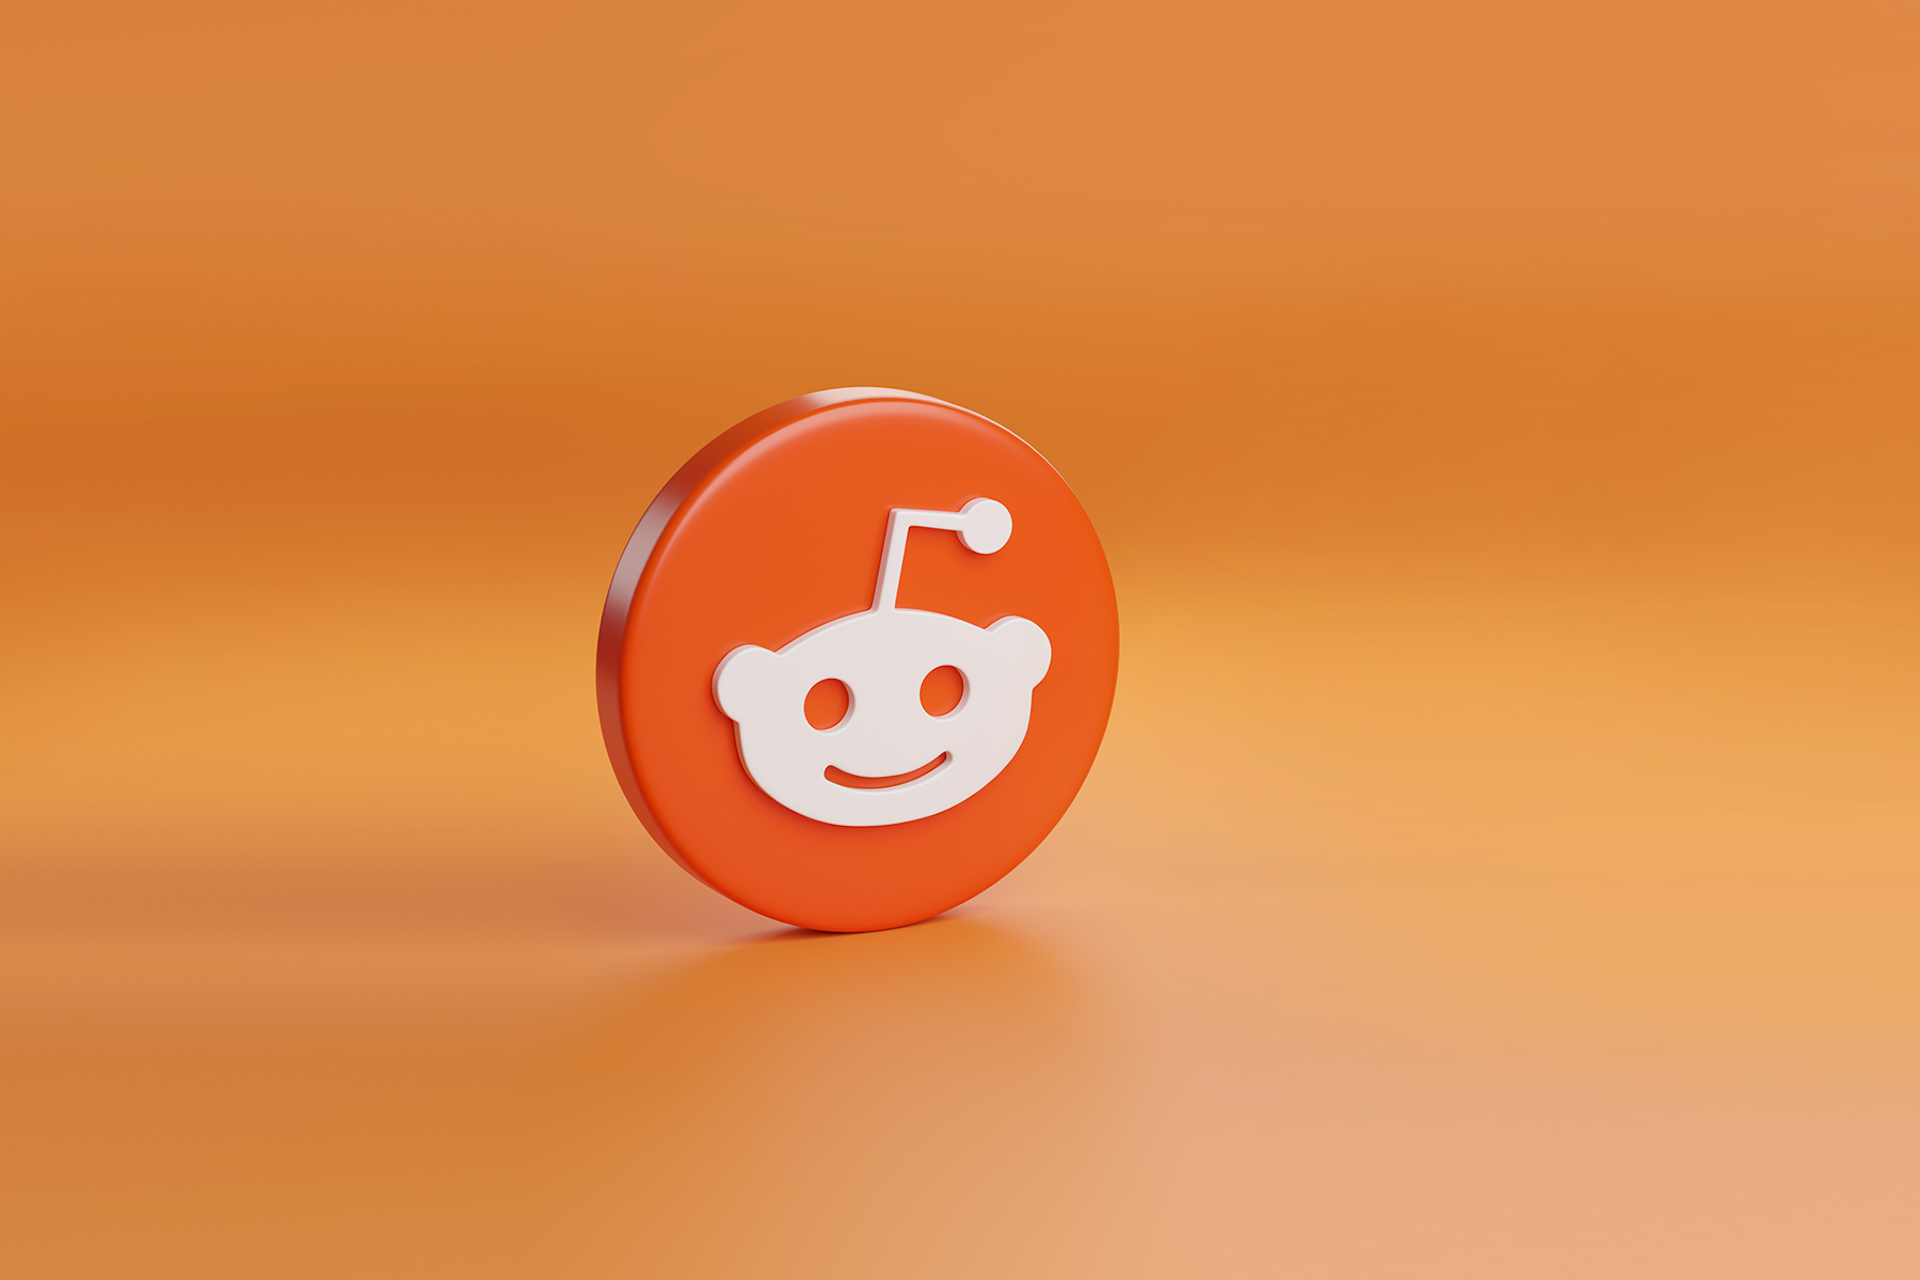 The Reddit logo against an orange background for a blog about brands marketing on Reddit.